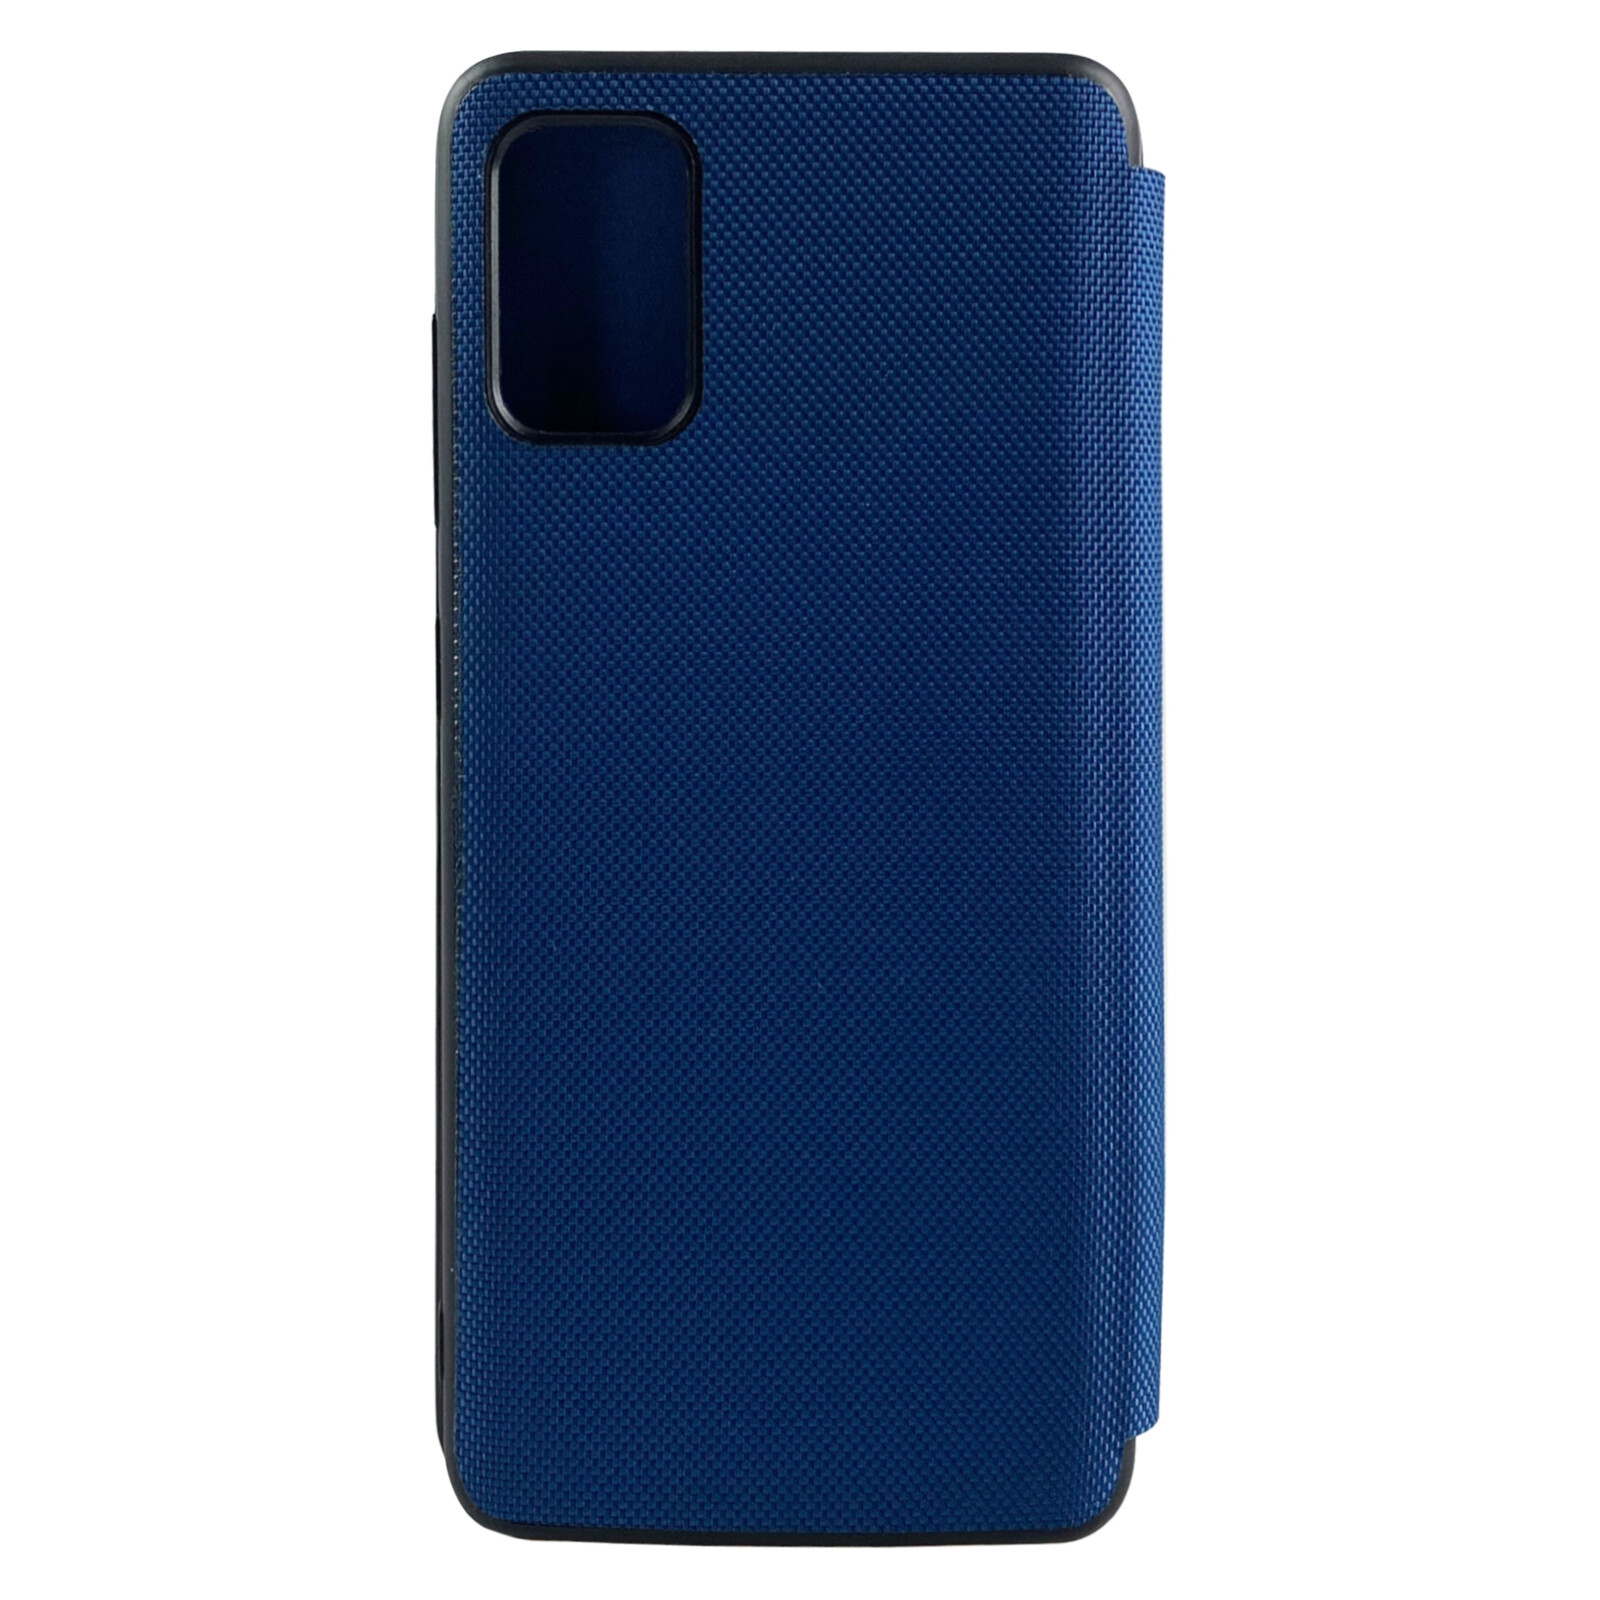 Felixx Booktasche VALENCIA Samsung Galaxy A71 evening blue